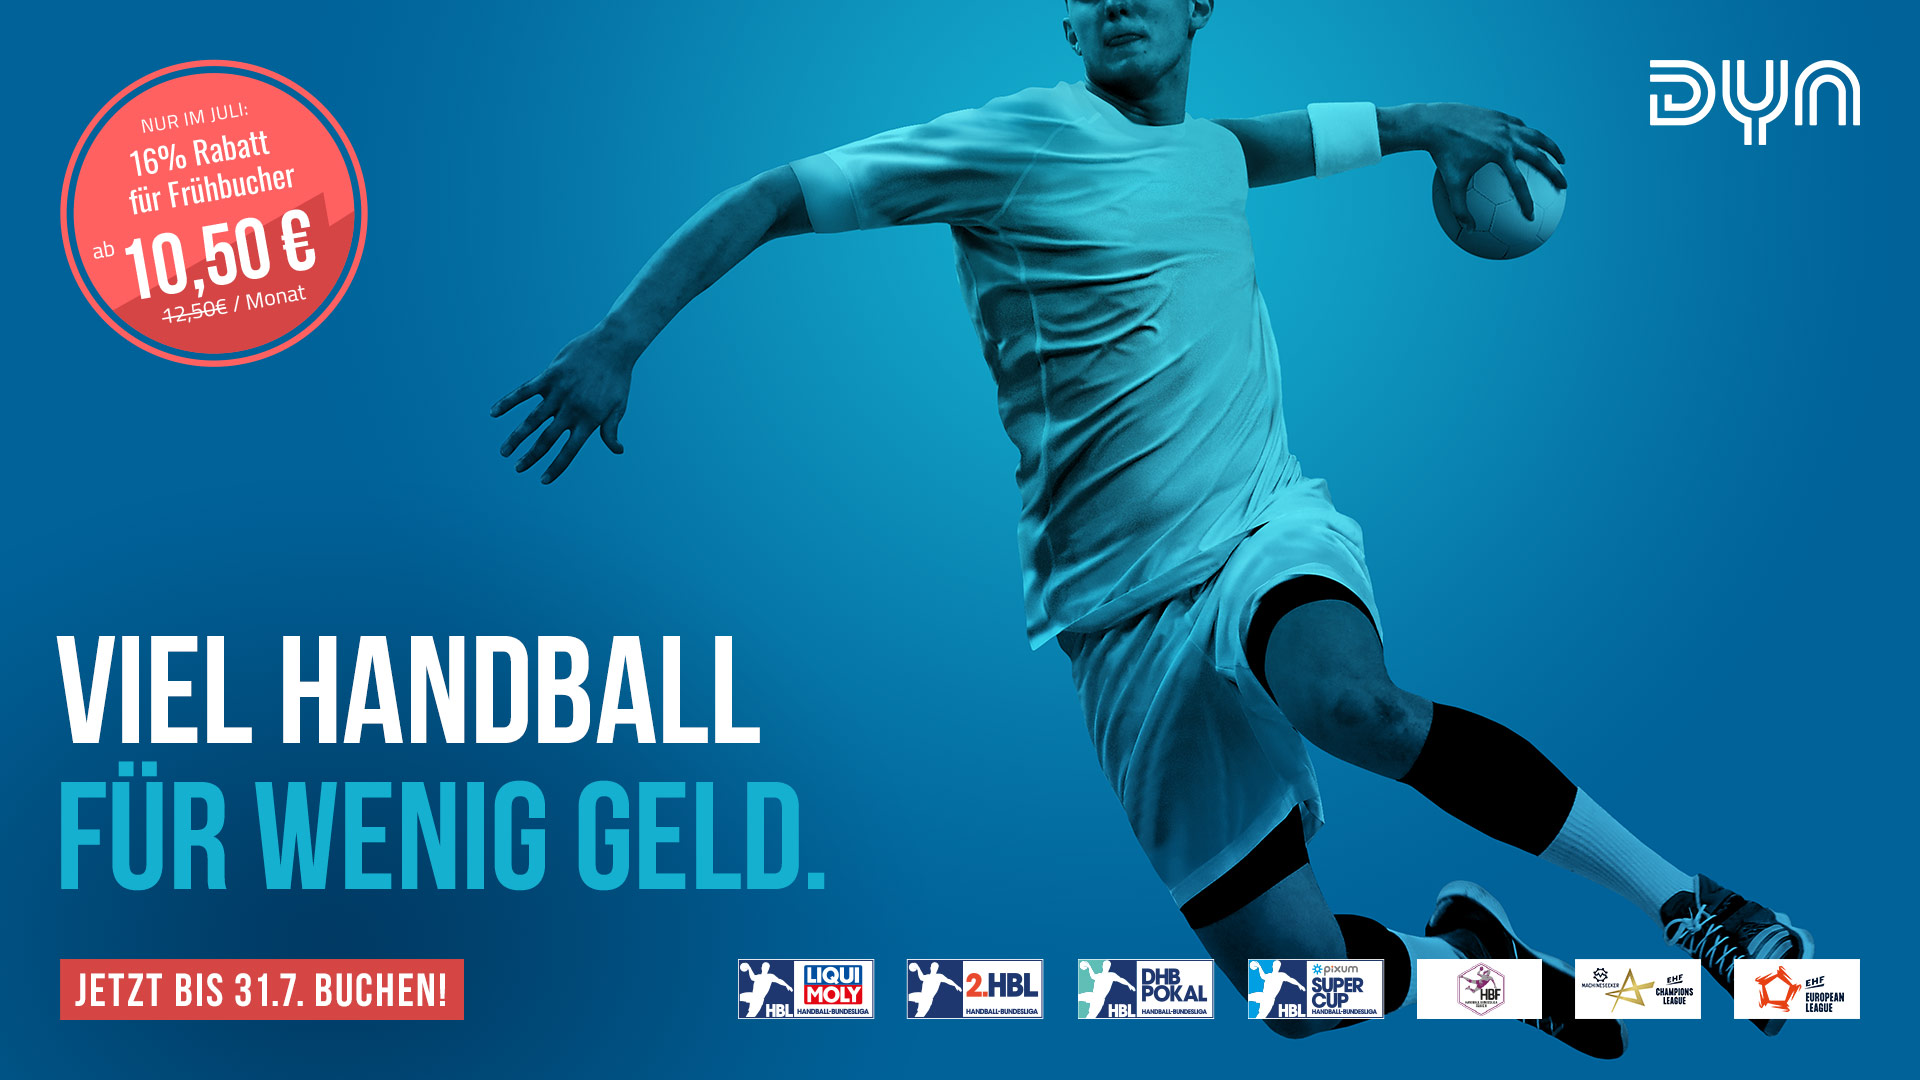 handball world news live stream